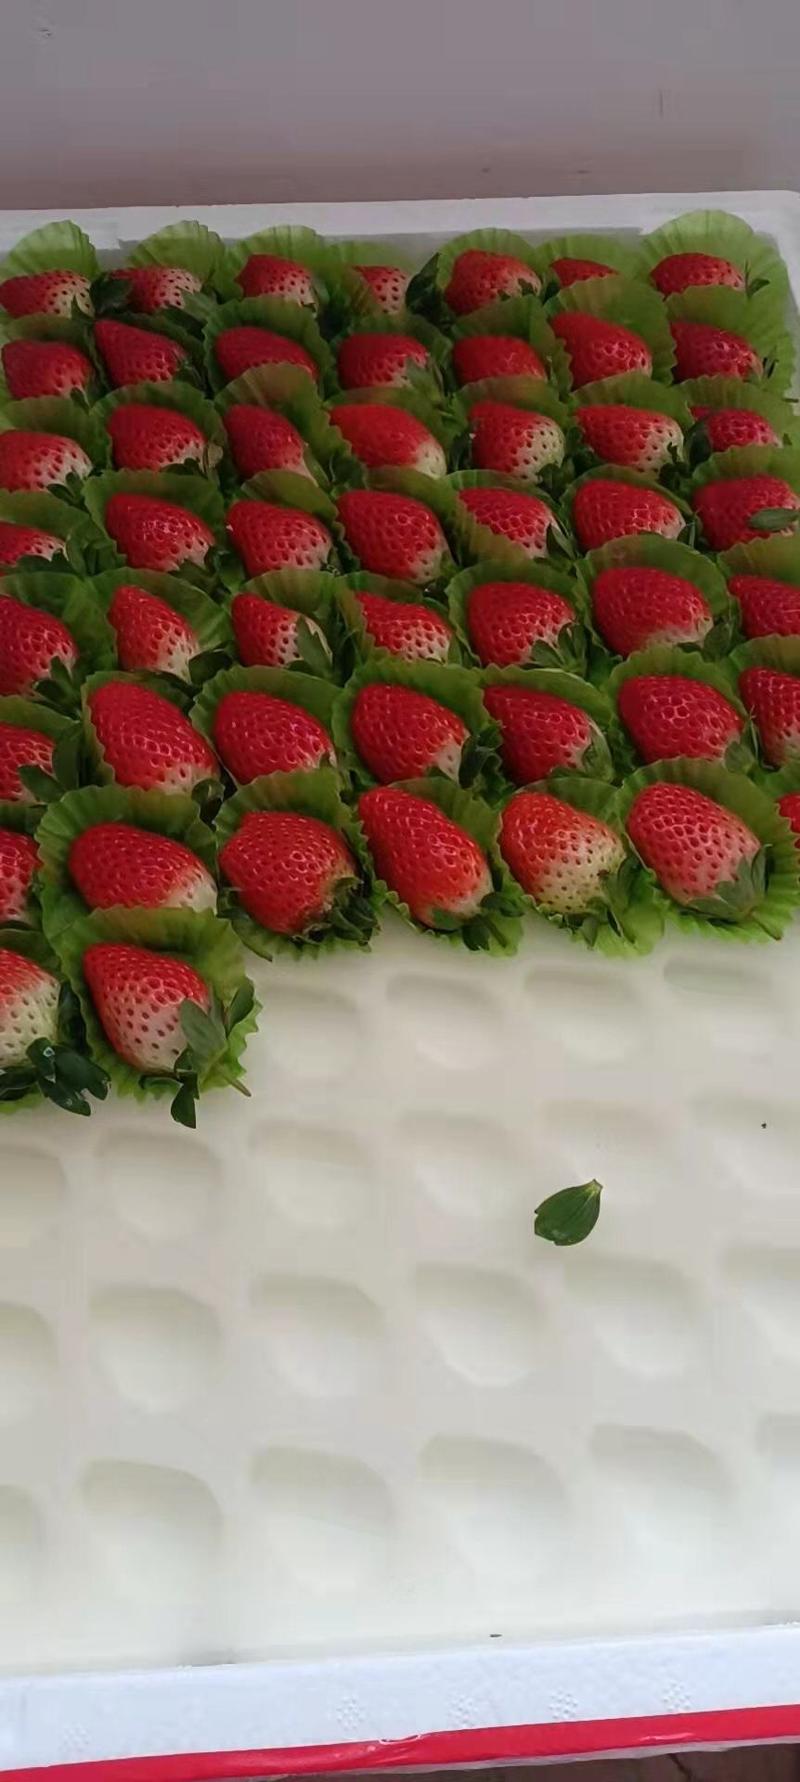 甜宝草莓优质江苏草莓商超品质酸甜可口货量充足长期供应